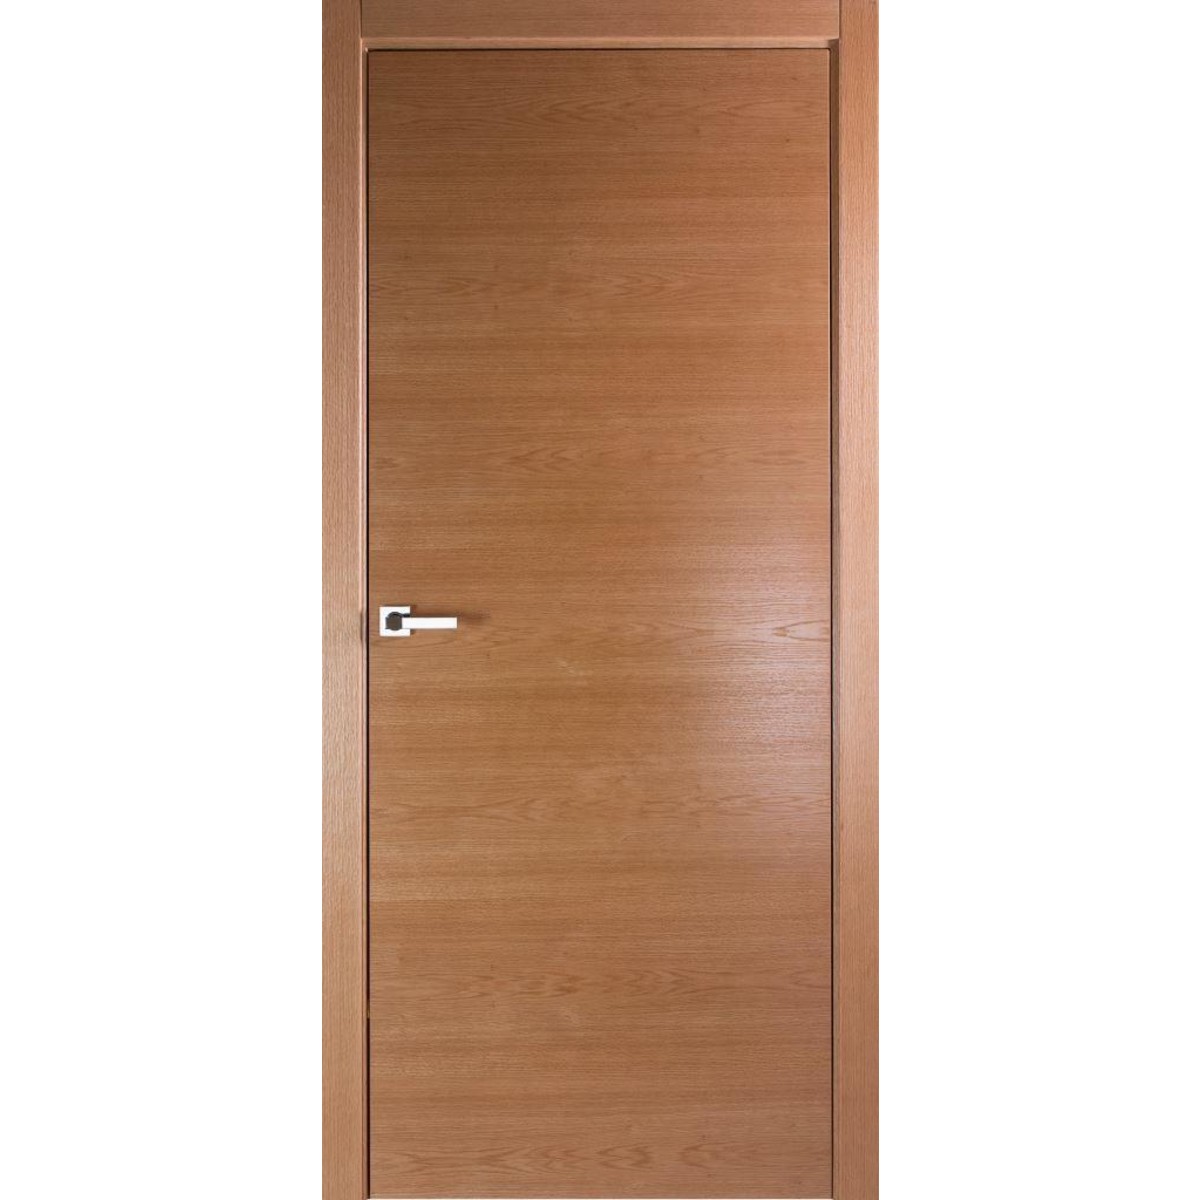 Дверь межкомнатная глухая без замка и петель в комплекте Лофтвуд 2 90x200 см шпон цвет дуб американский